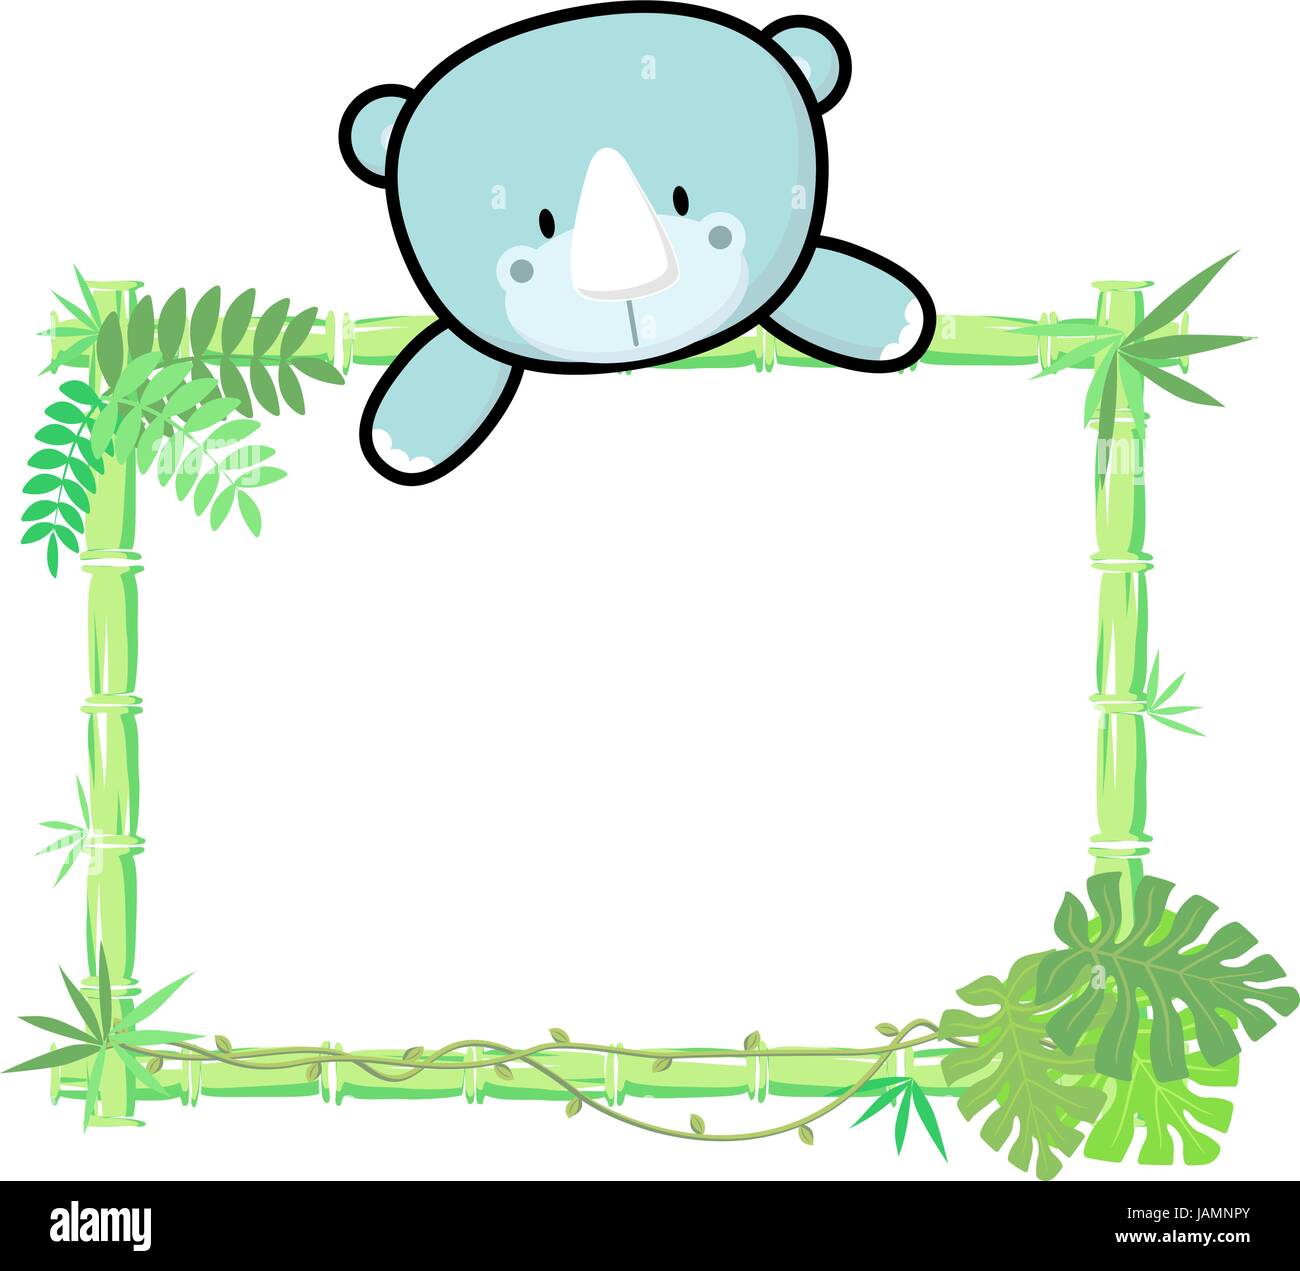 Carino baby rhino su Blank Board con cornice di bamboo isolati su sfondo bianco Illustrazione Vettoriale